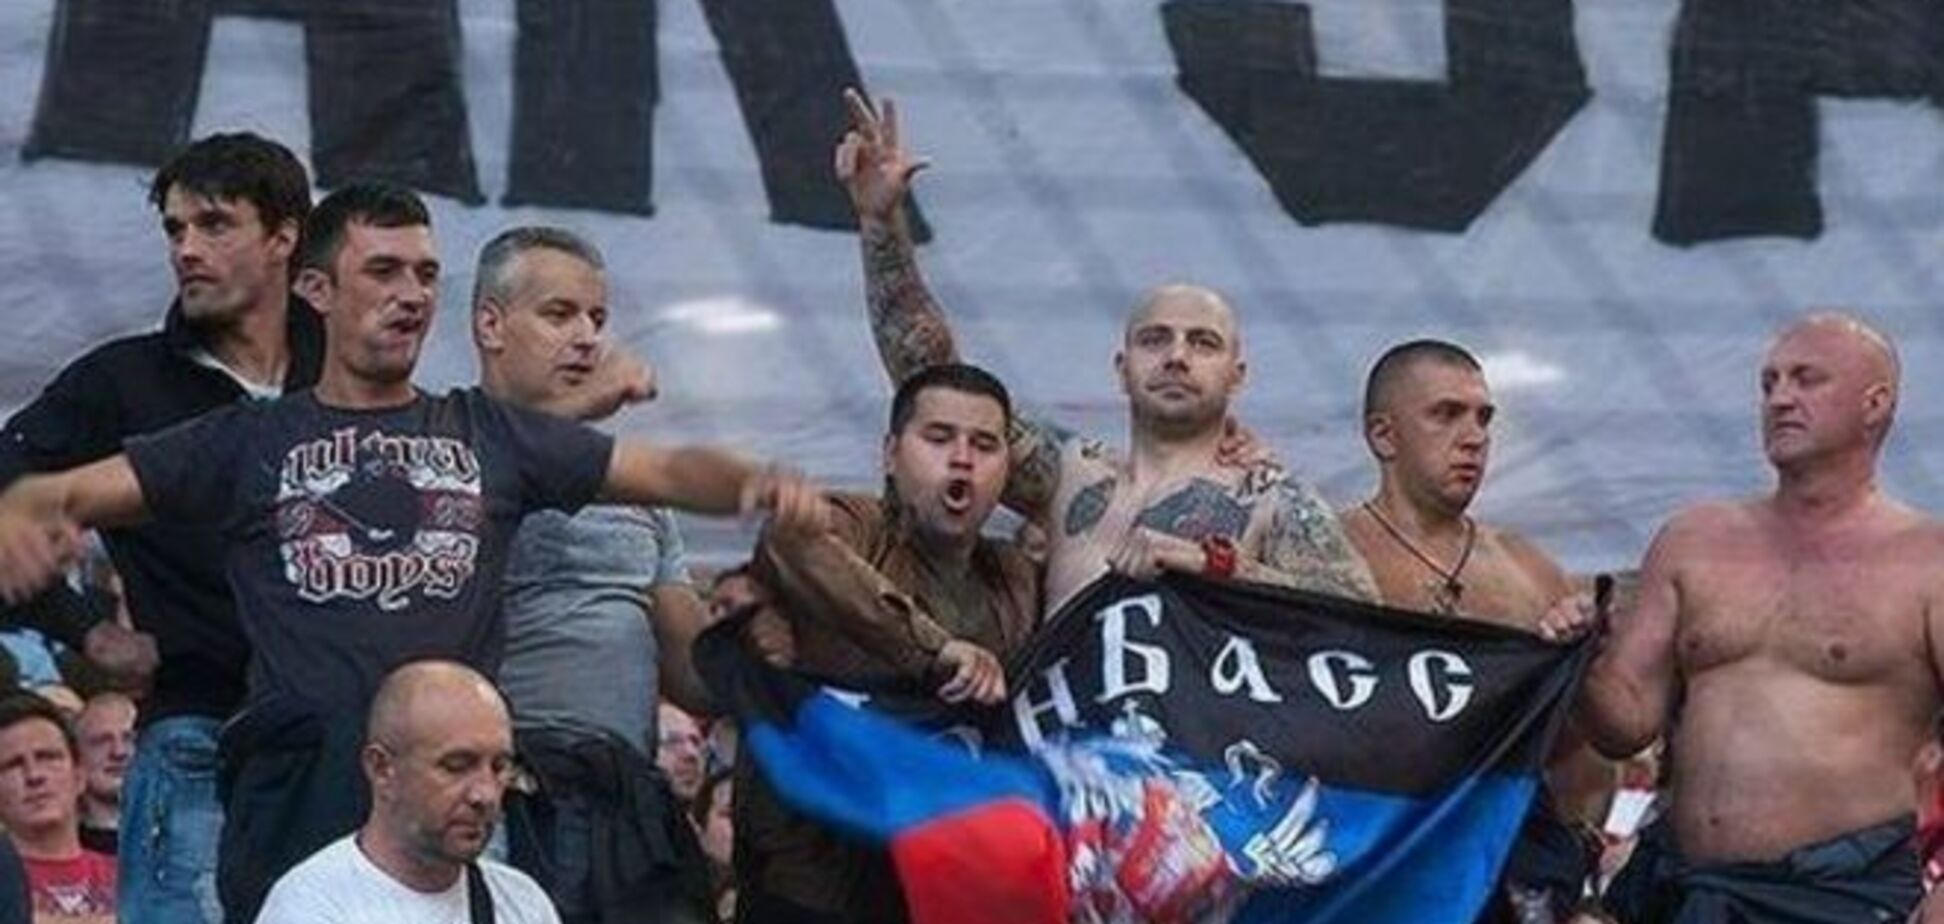 Россияне устроили провокацию с флагом террористов ДНР на матче в Швеции